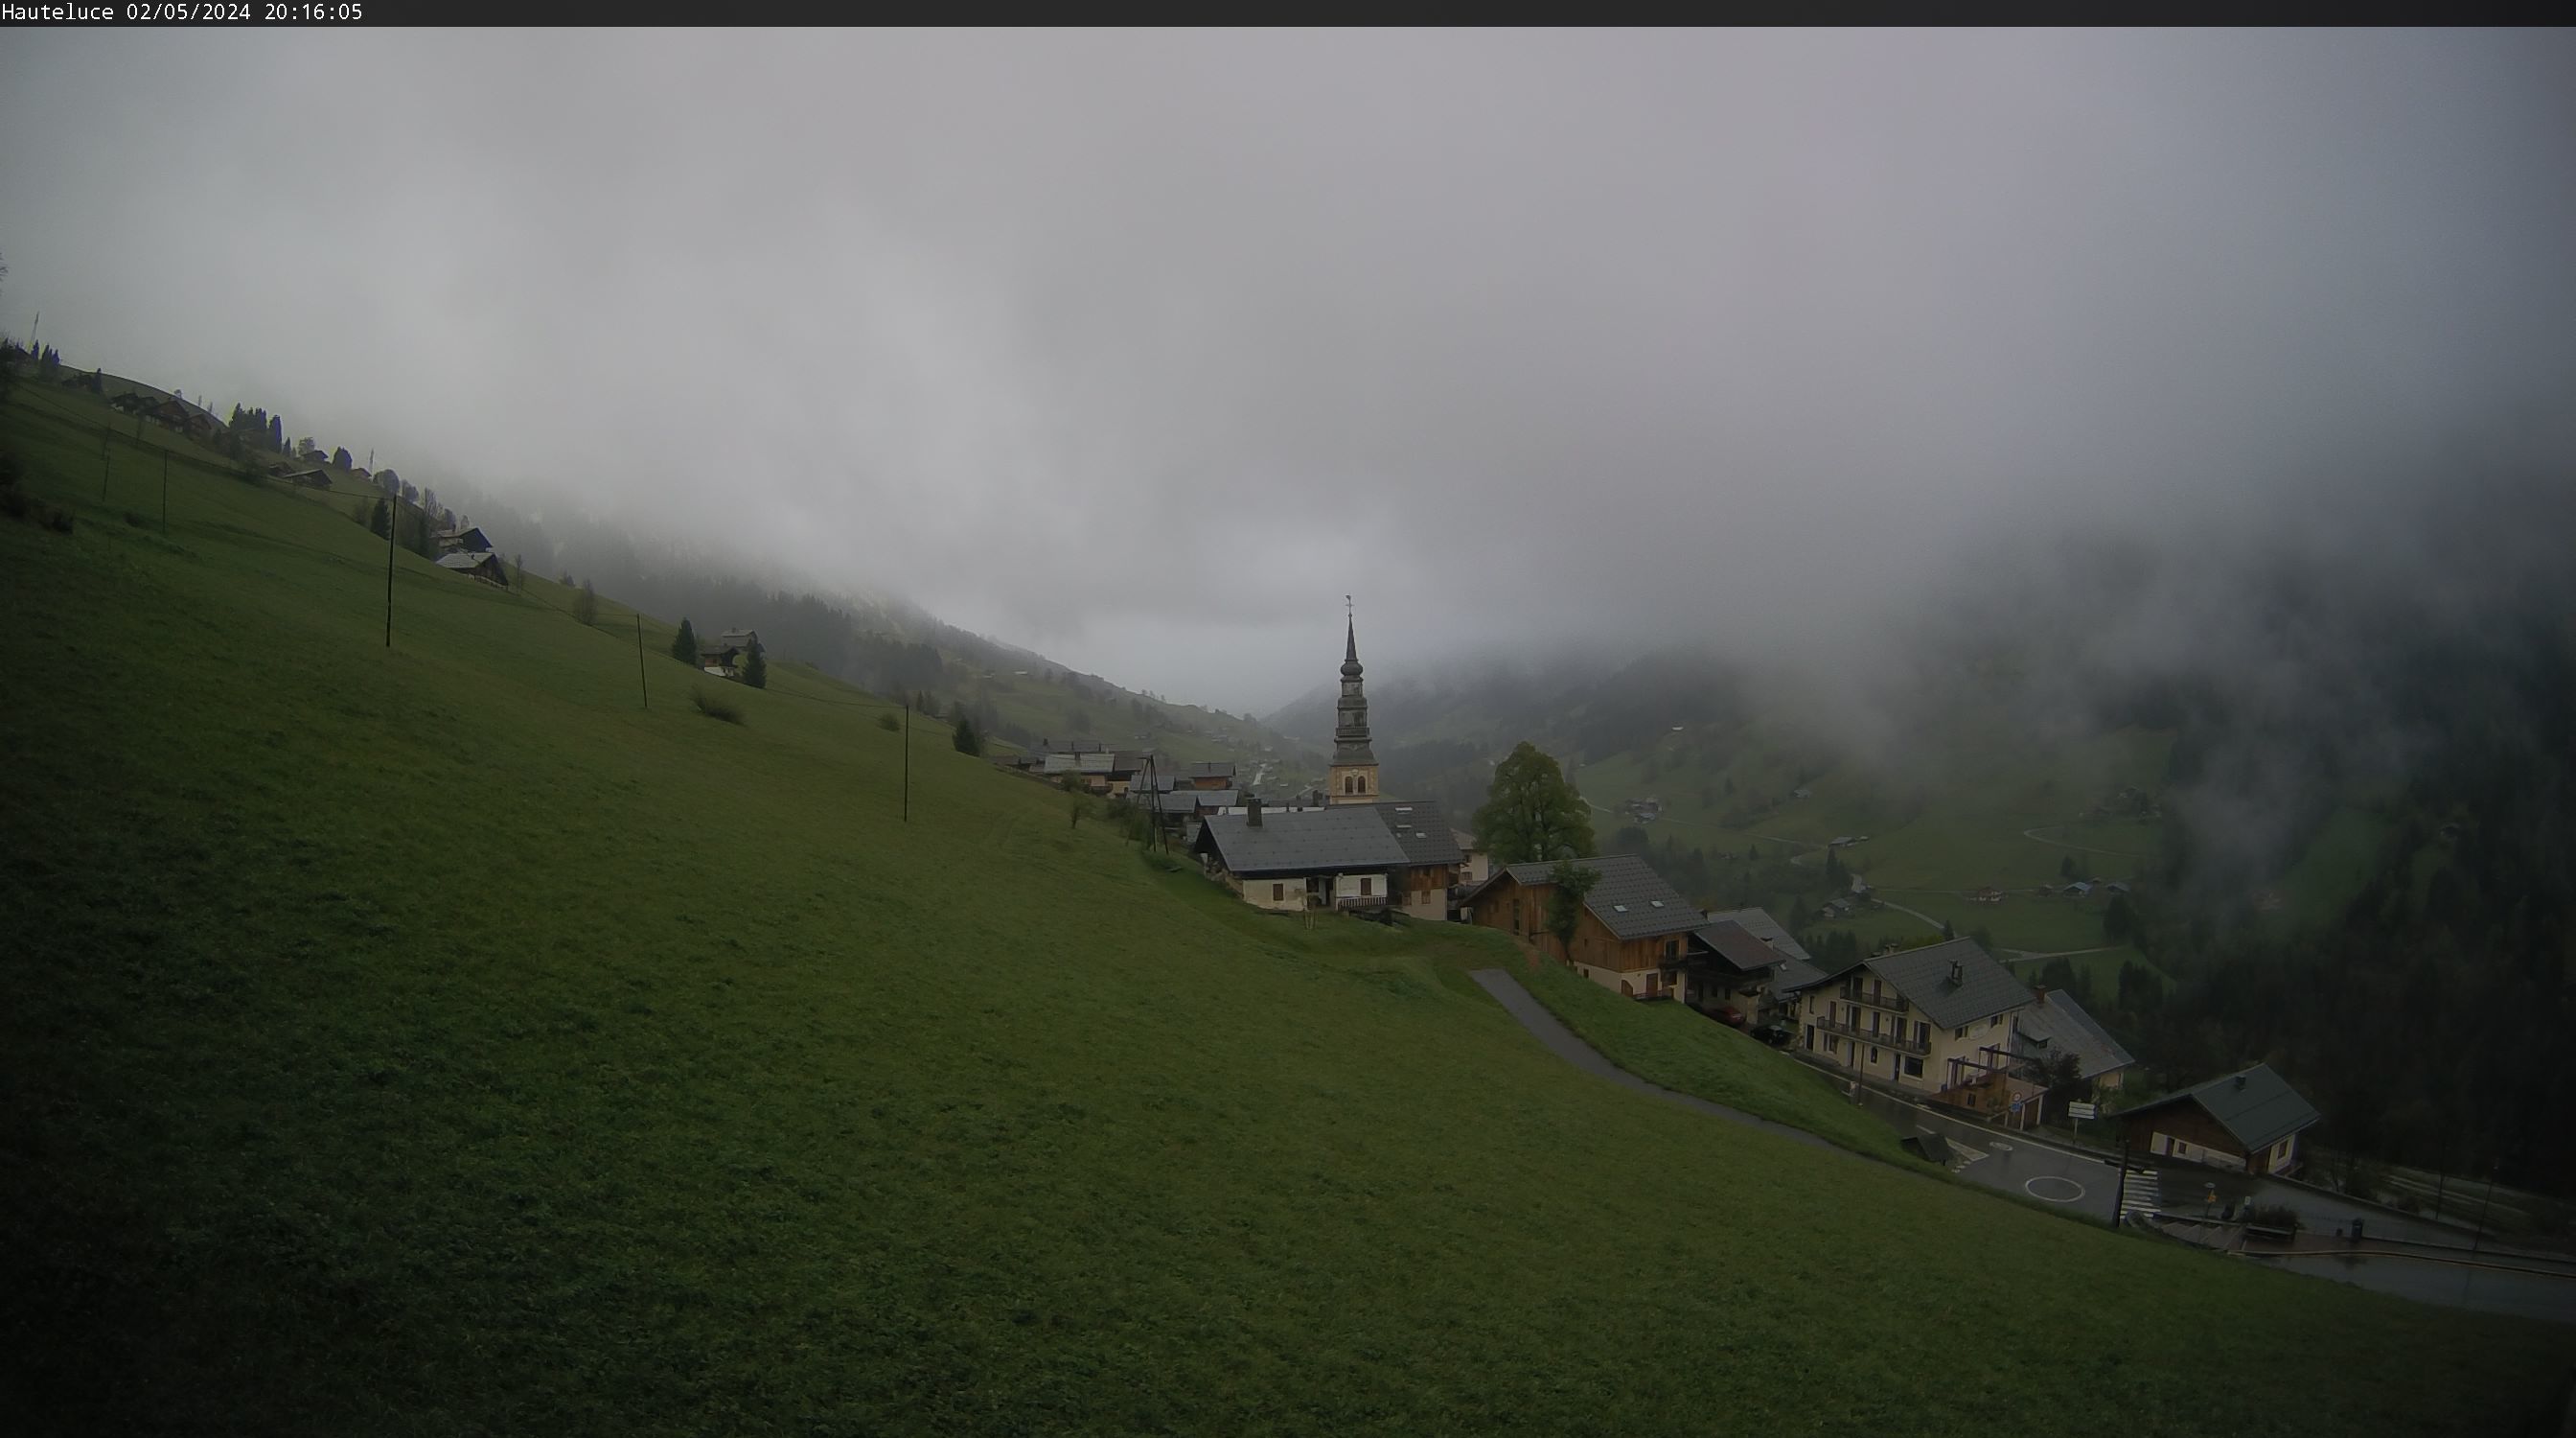 Webcam 8 : Hauteluce - Vue sur le village et la vall�e - 1150 m�tres